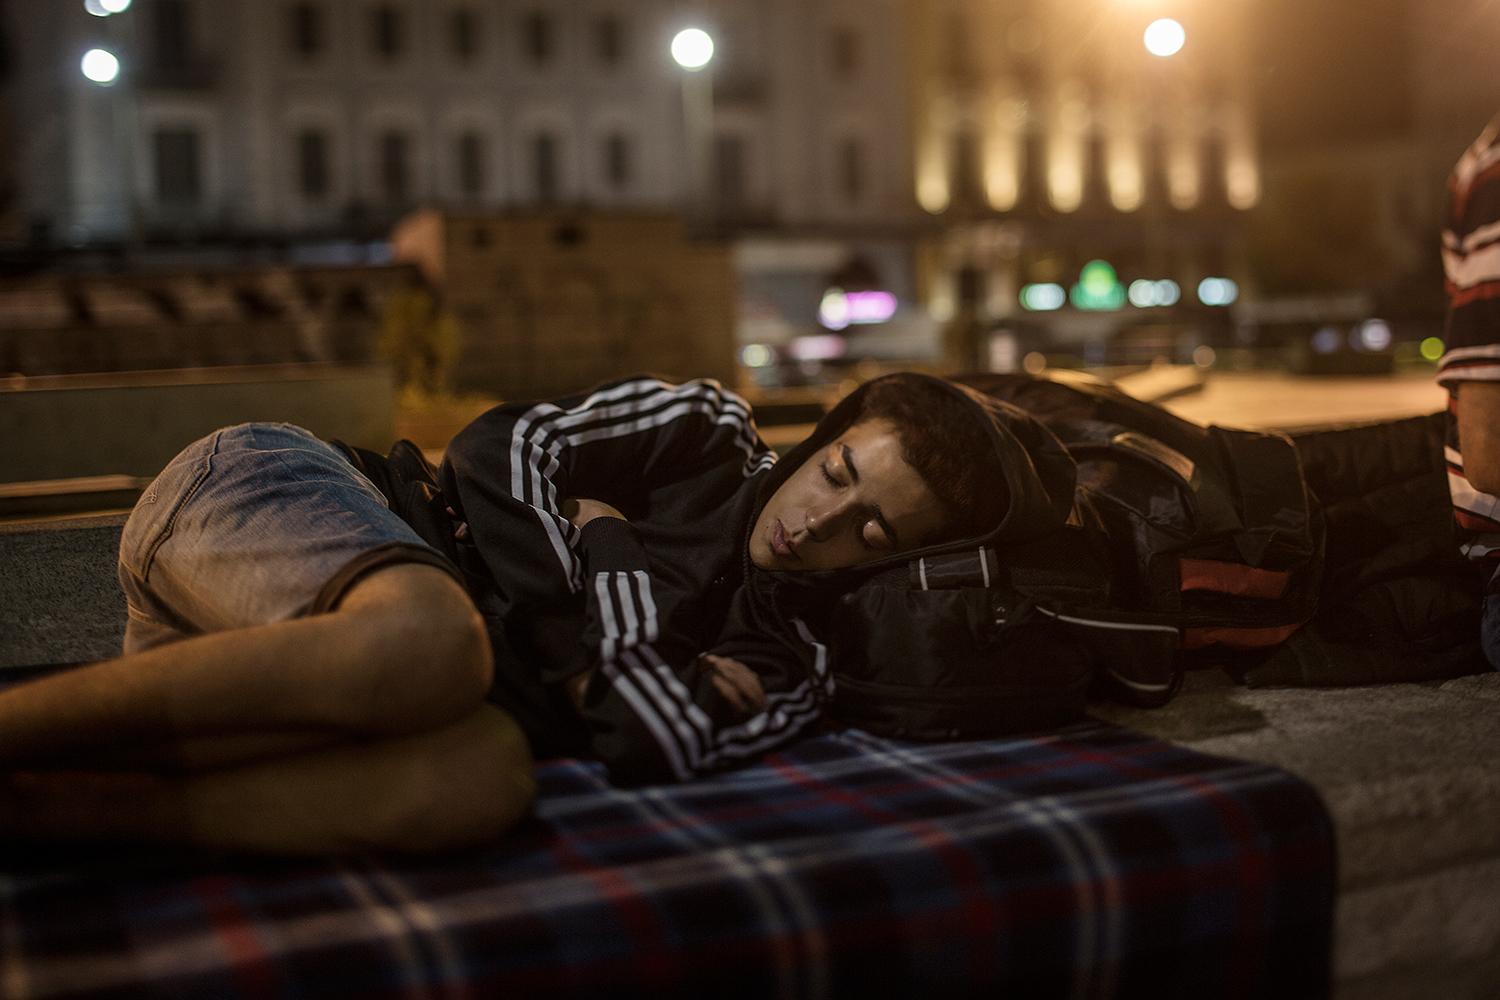 17-årige Abdulkarim sover på Omonia Square i Aten:  ”Det är tryggare att sova här bland folk än inne i någon tyst gränd”